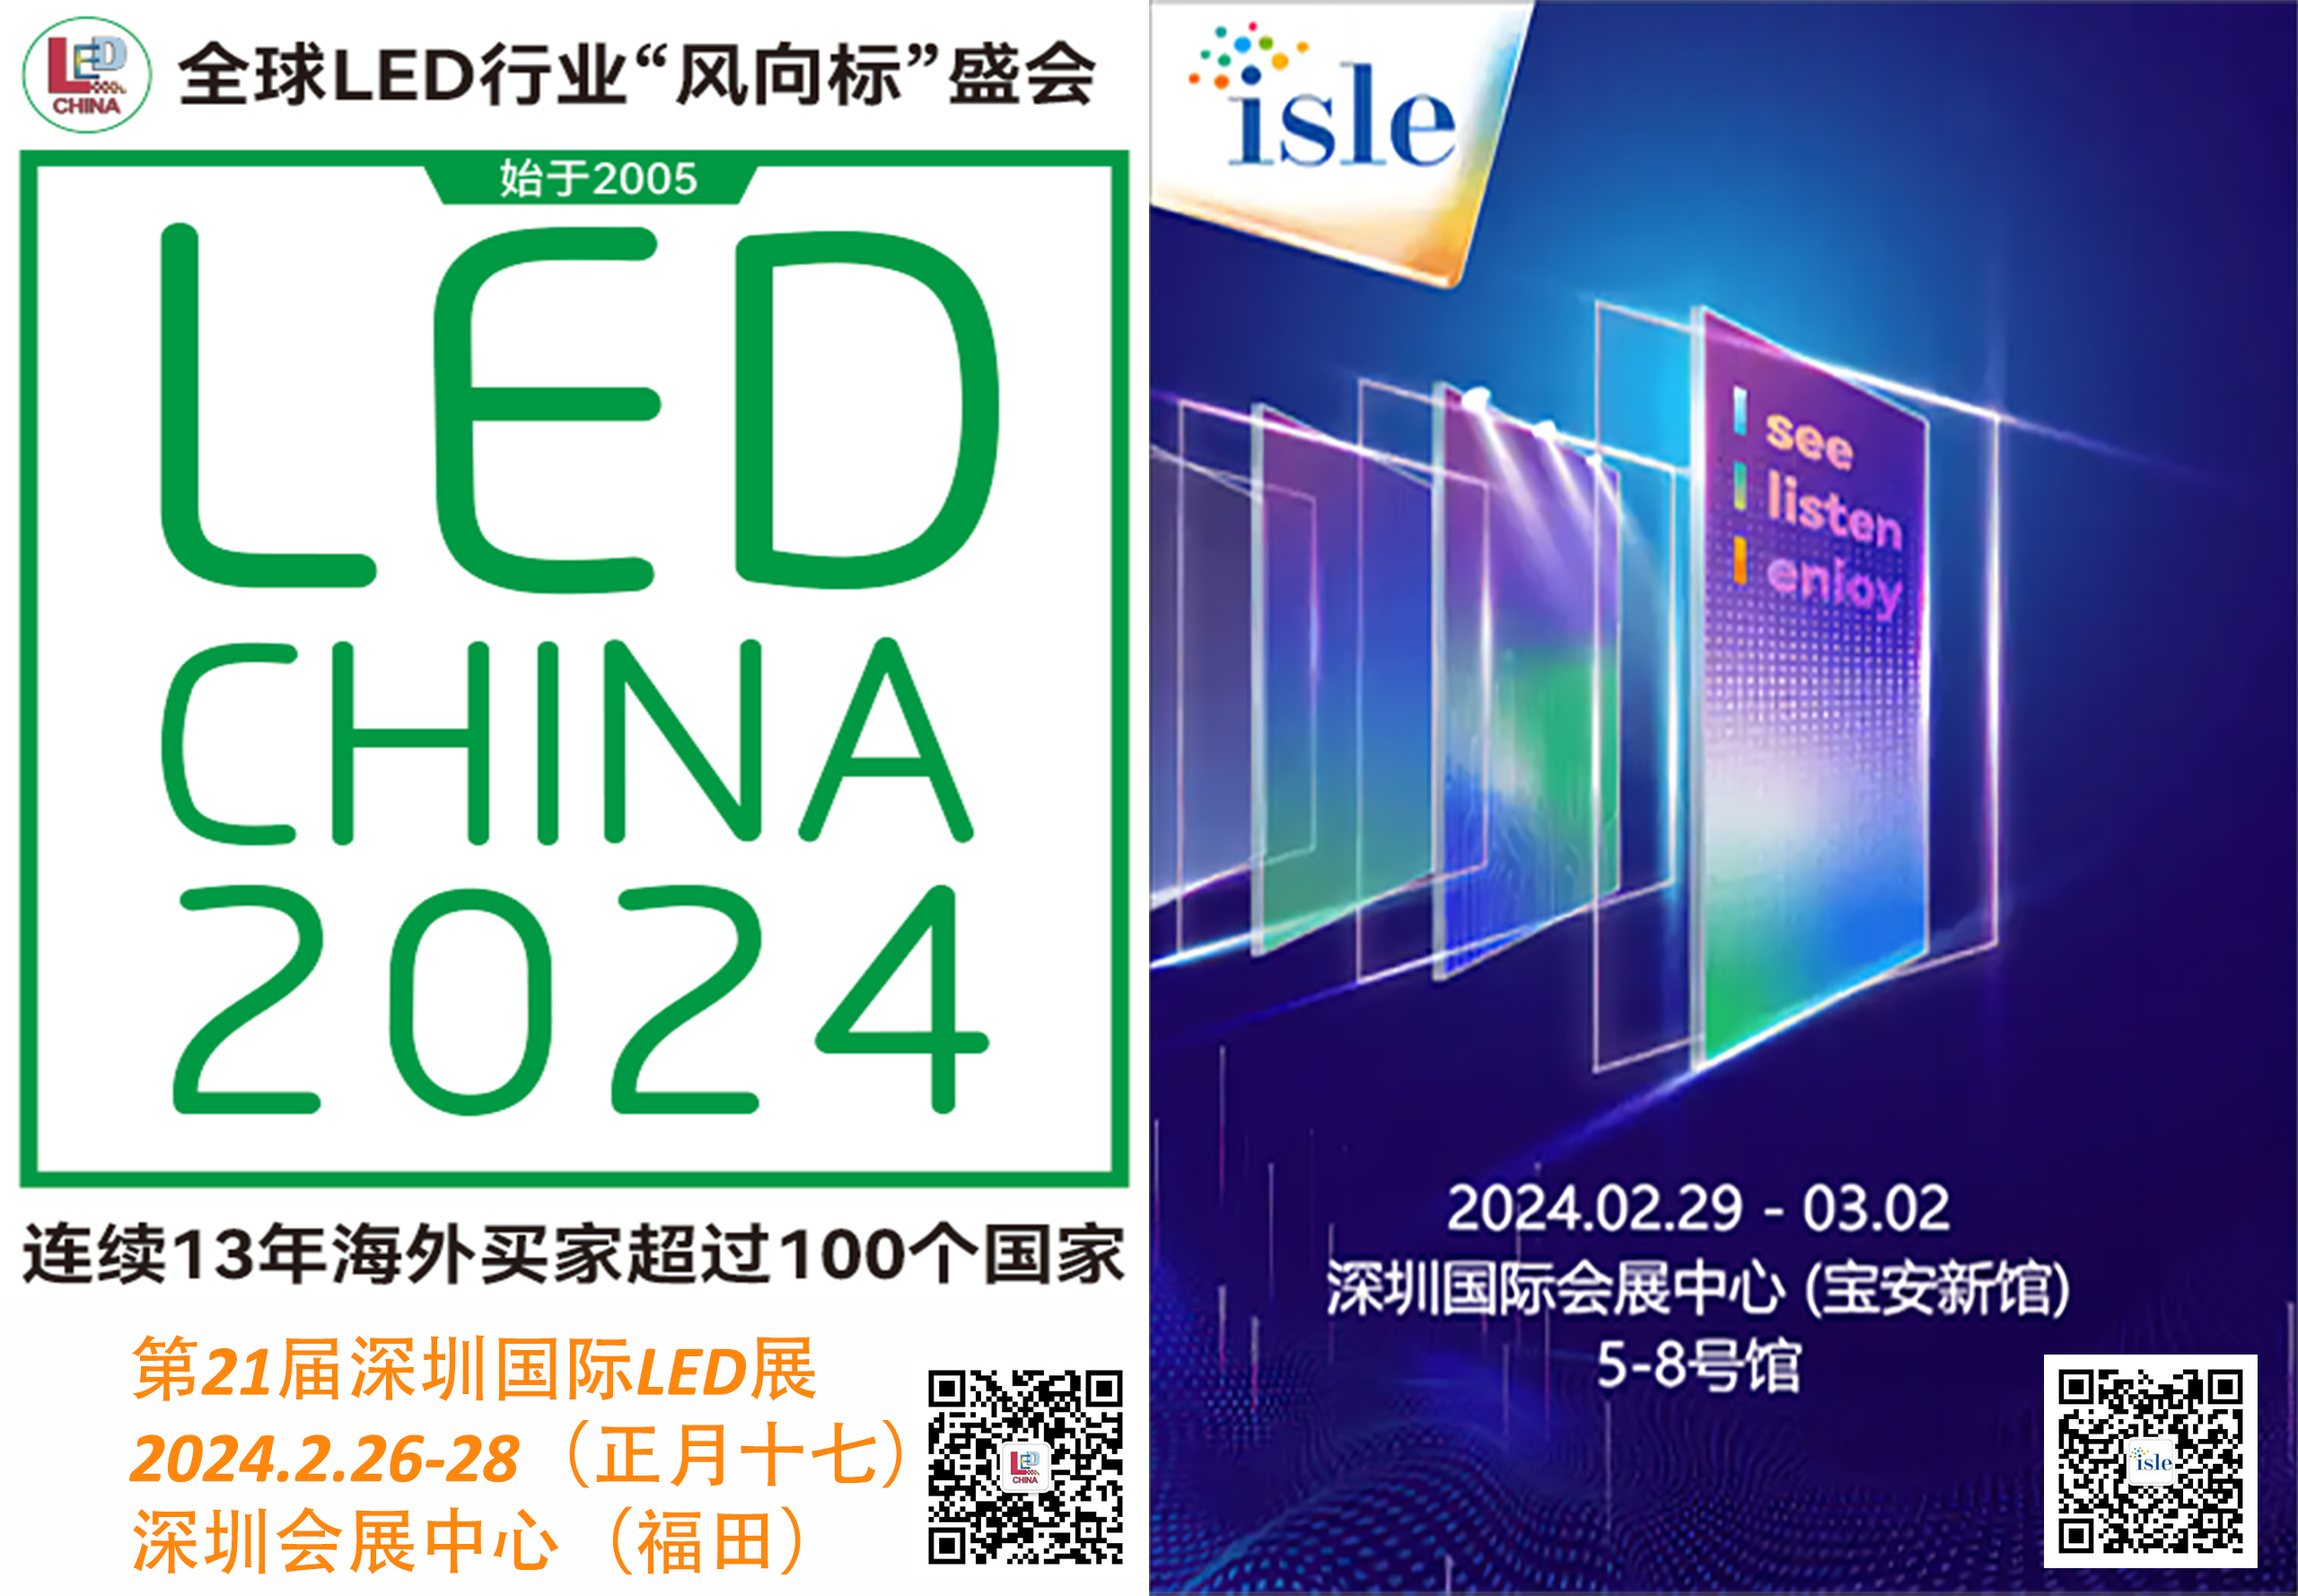 Grande settimana la prossima settimana a Shenzhen per l’industria della segnaletica digitale LED!